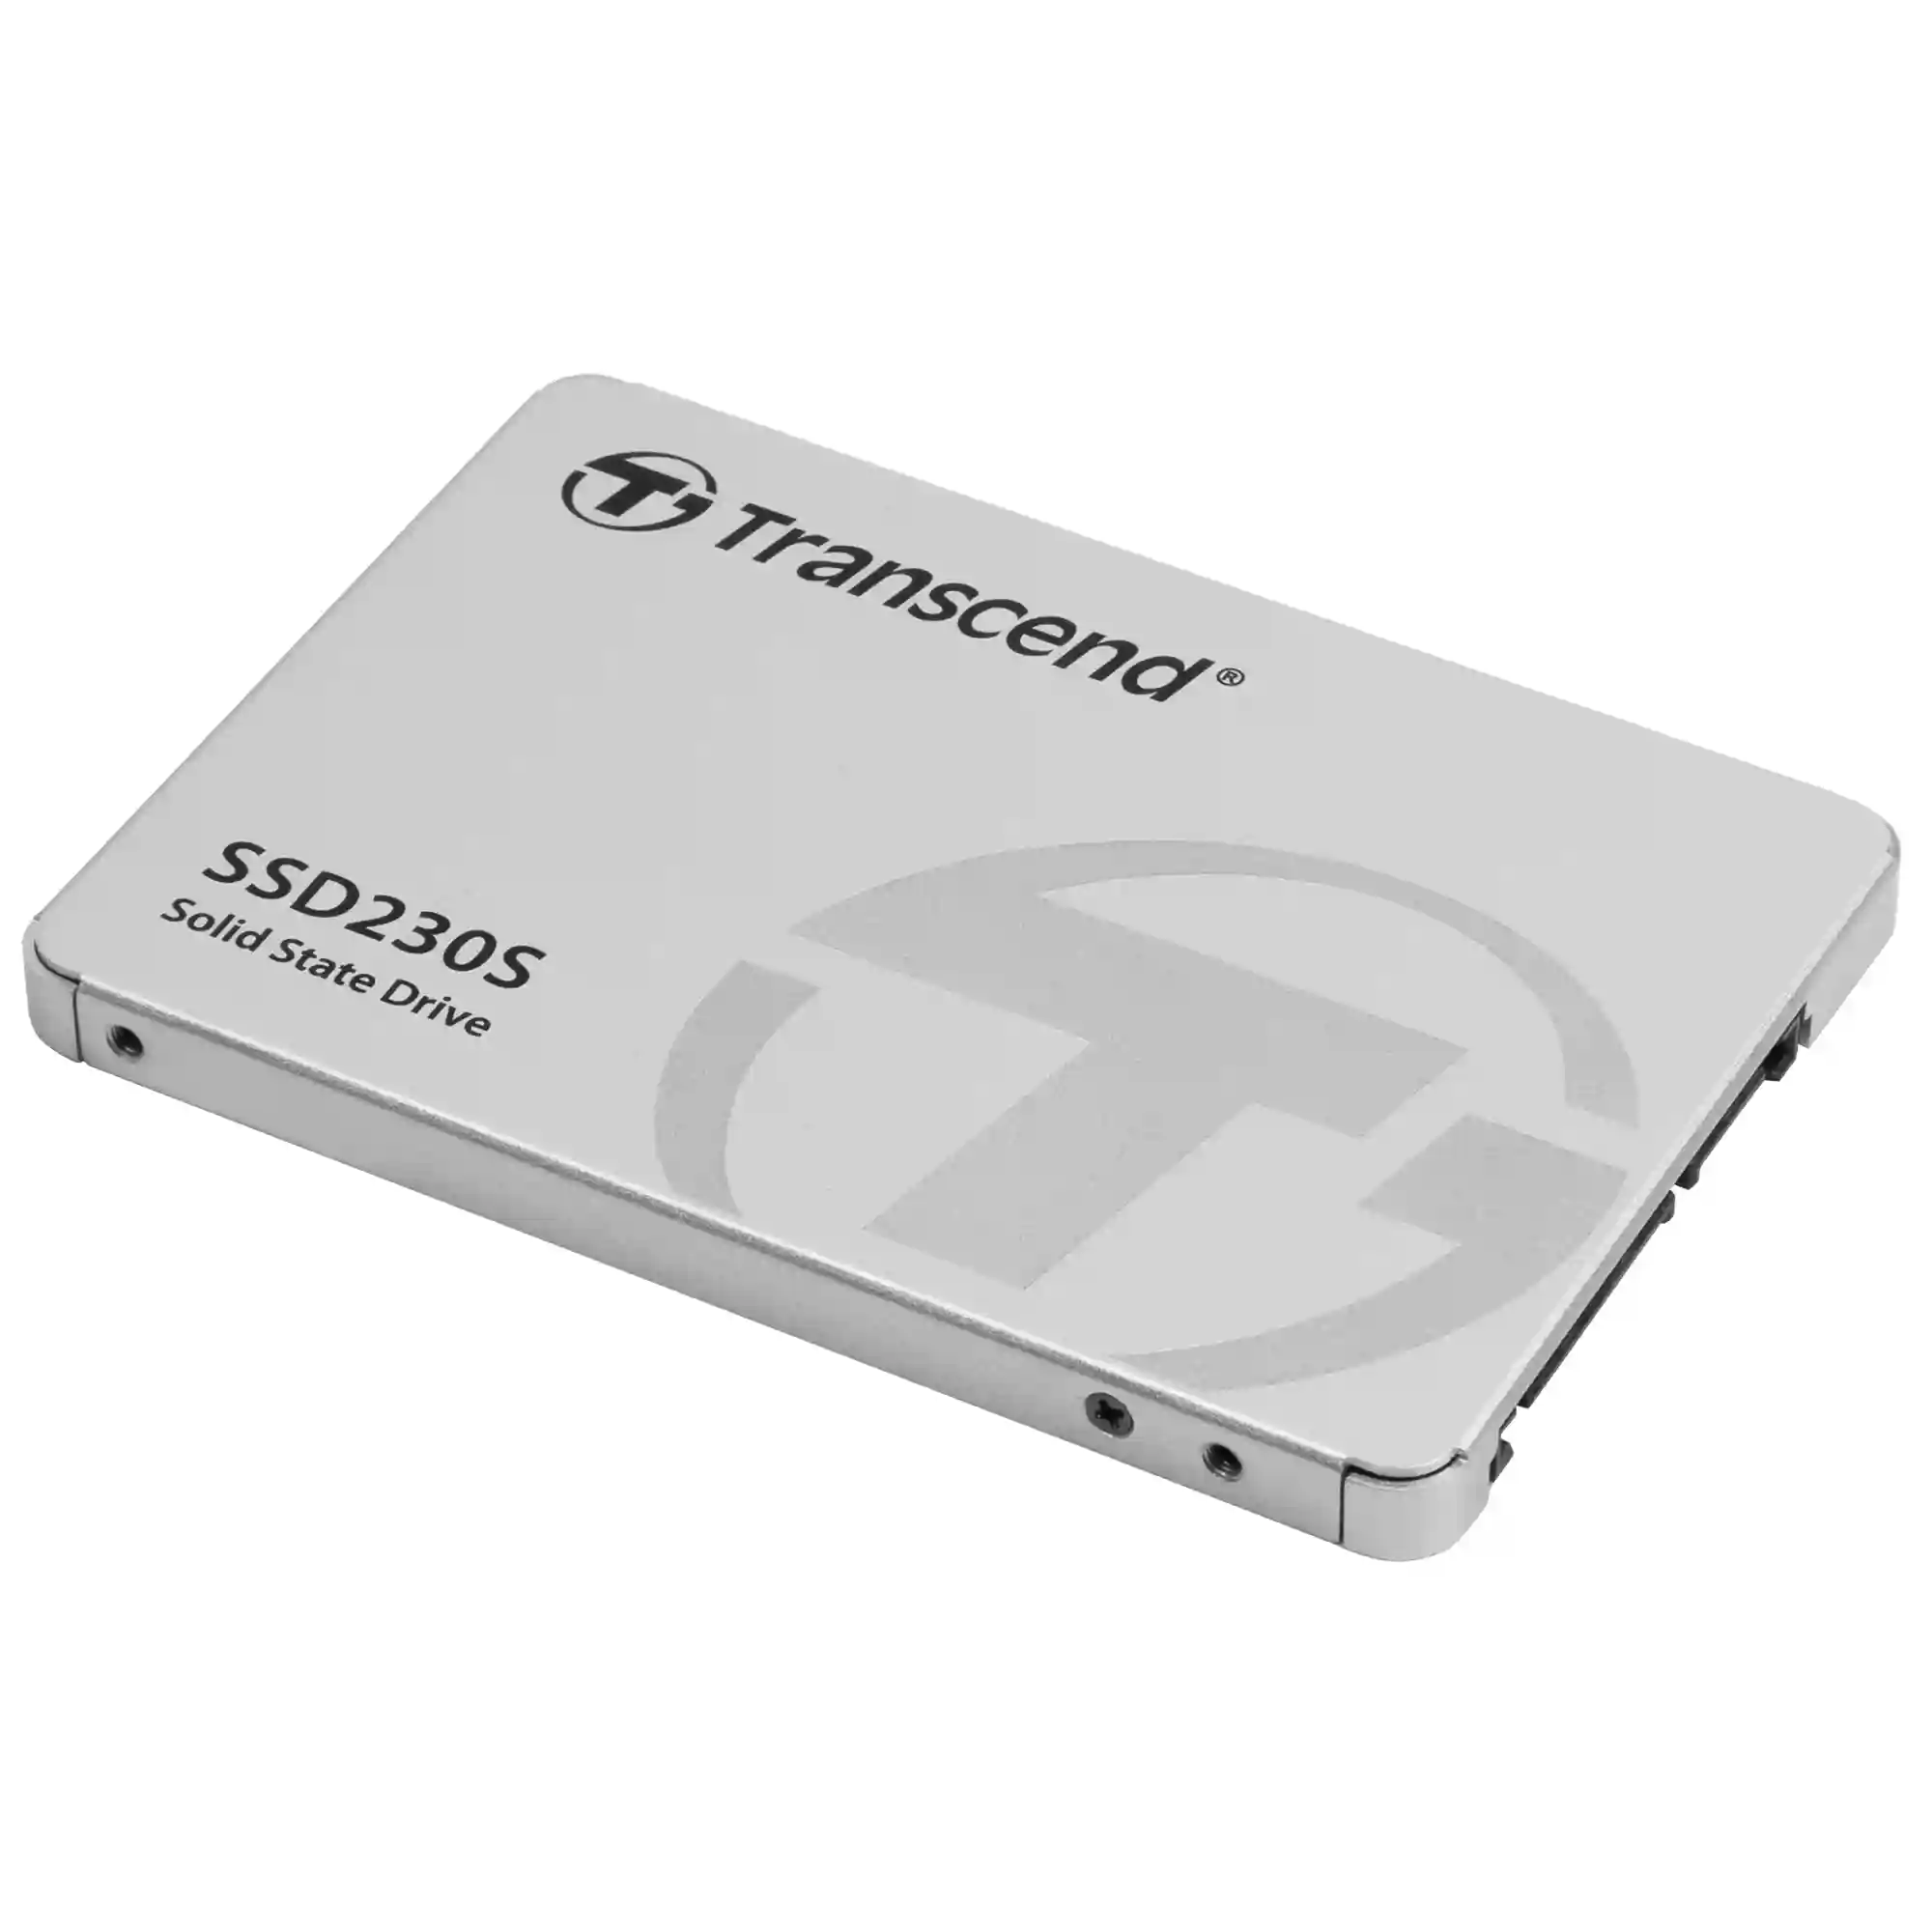 Внутренний SSD диск TRANSCEND 1TB, SATA3, 2.5" (TS1TSSD230S)